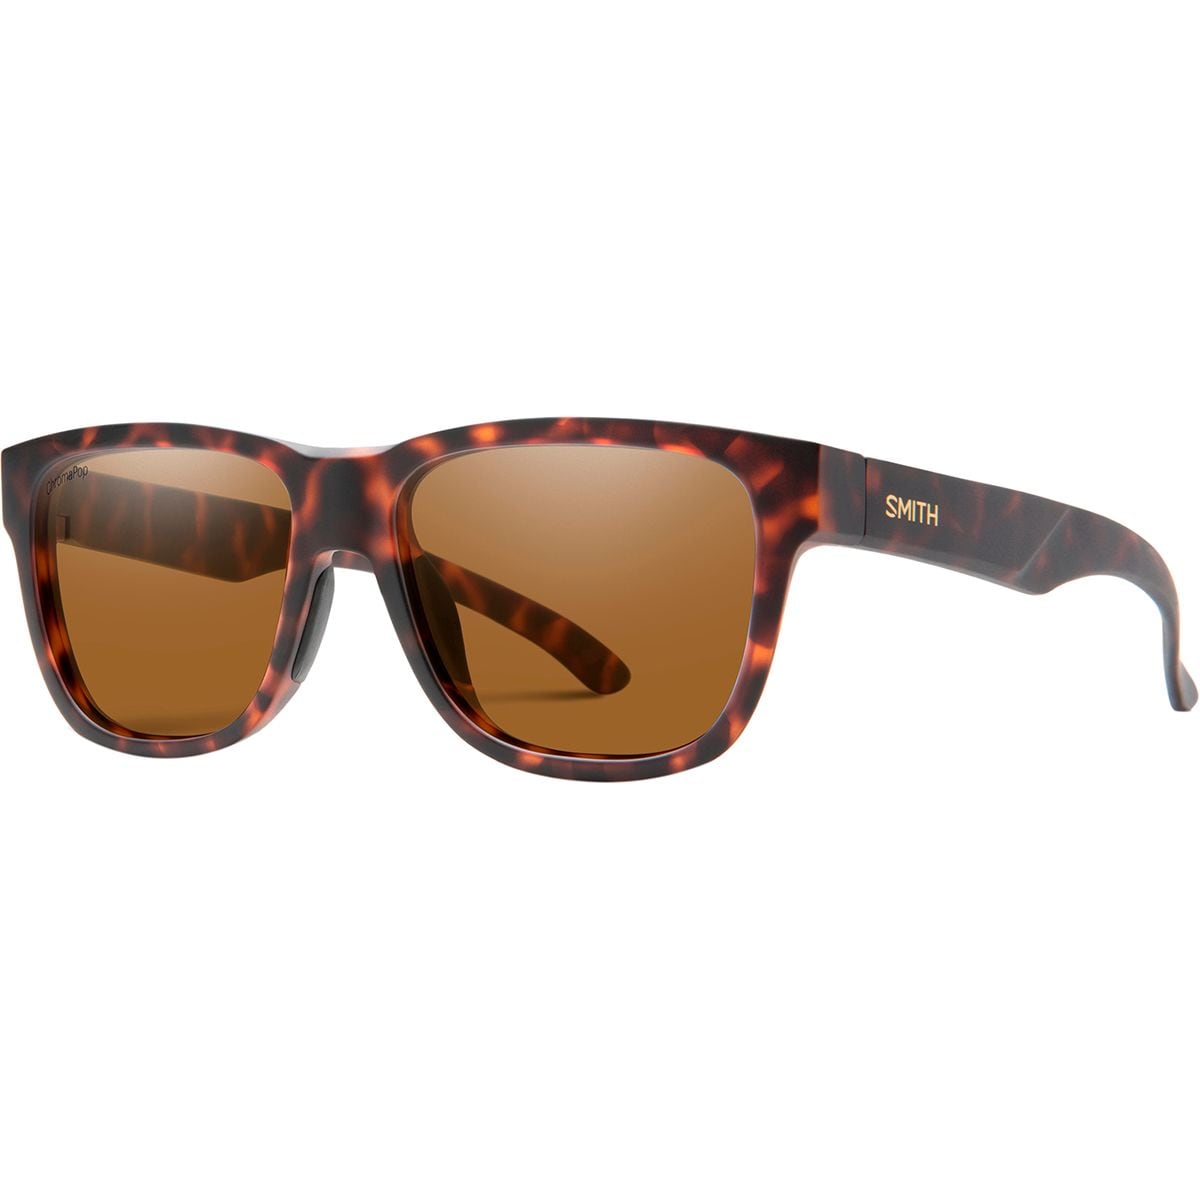 Photos - Sunglasses Smith Lowdown Slim2 ChromaPop Polarized  